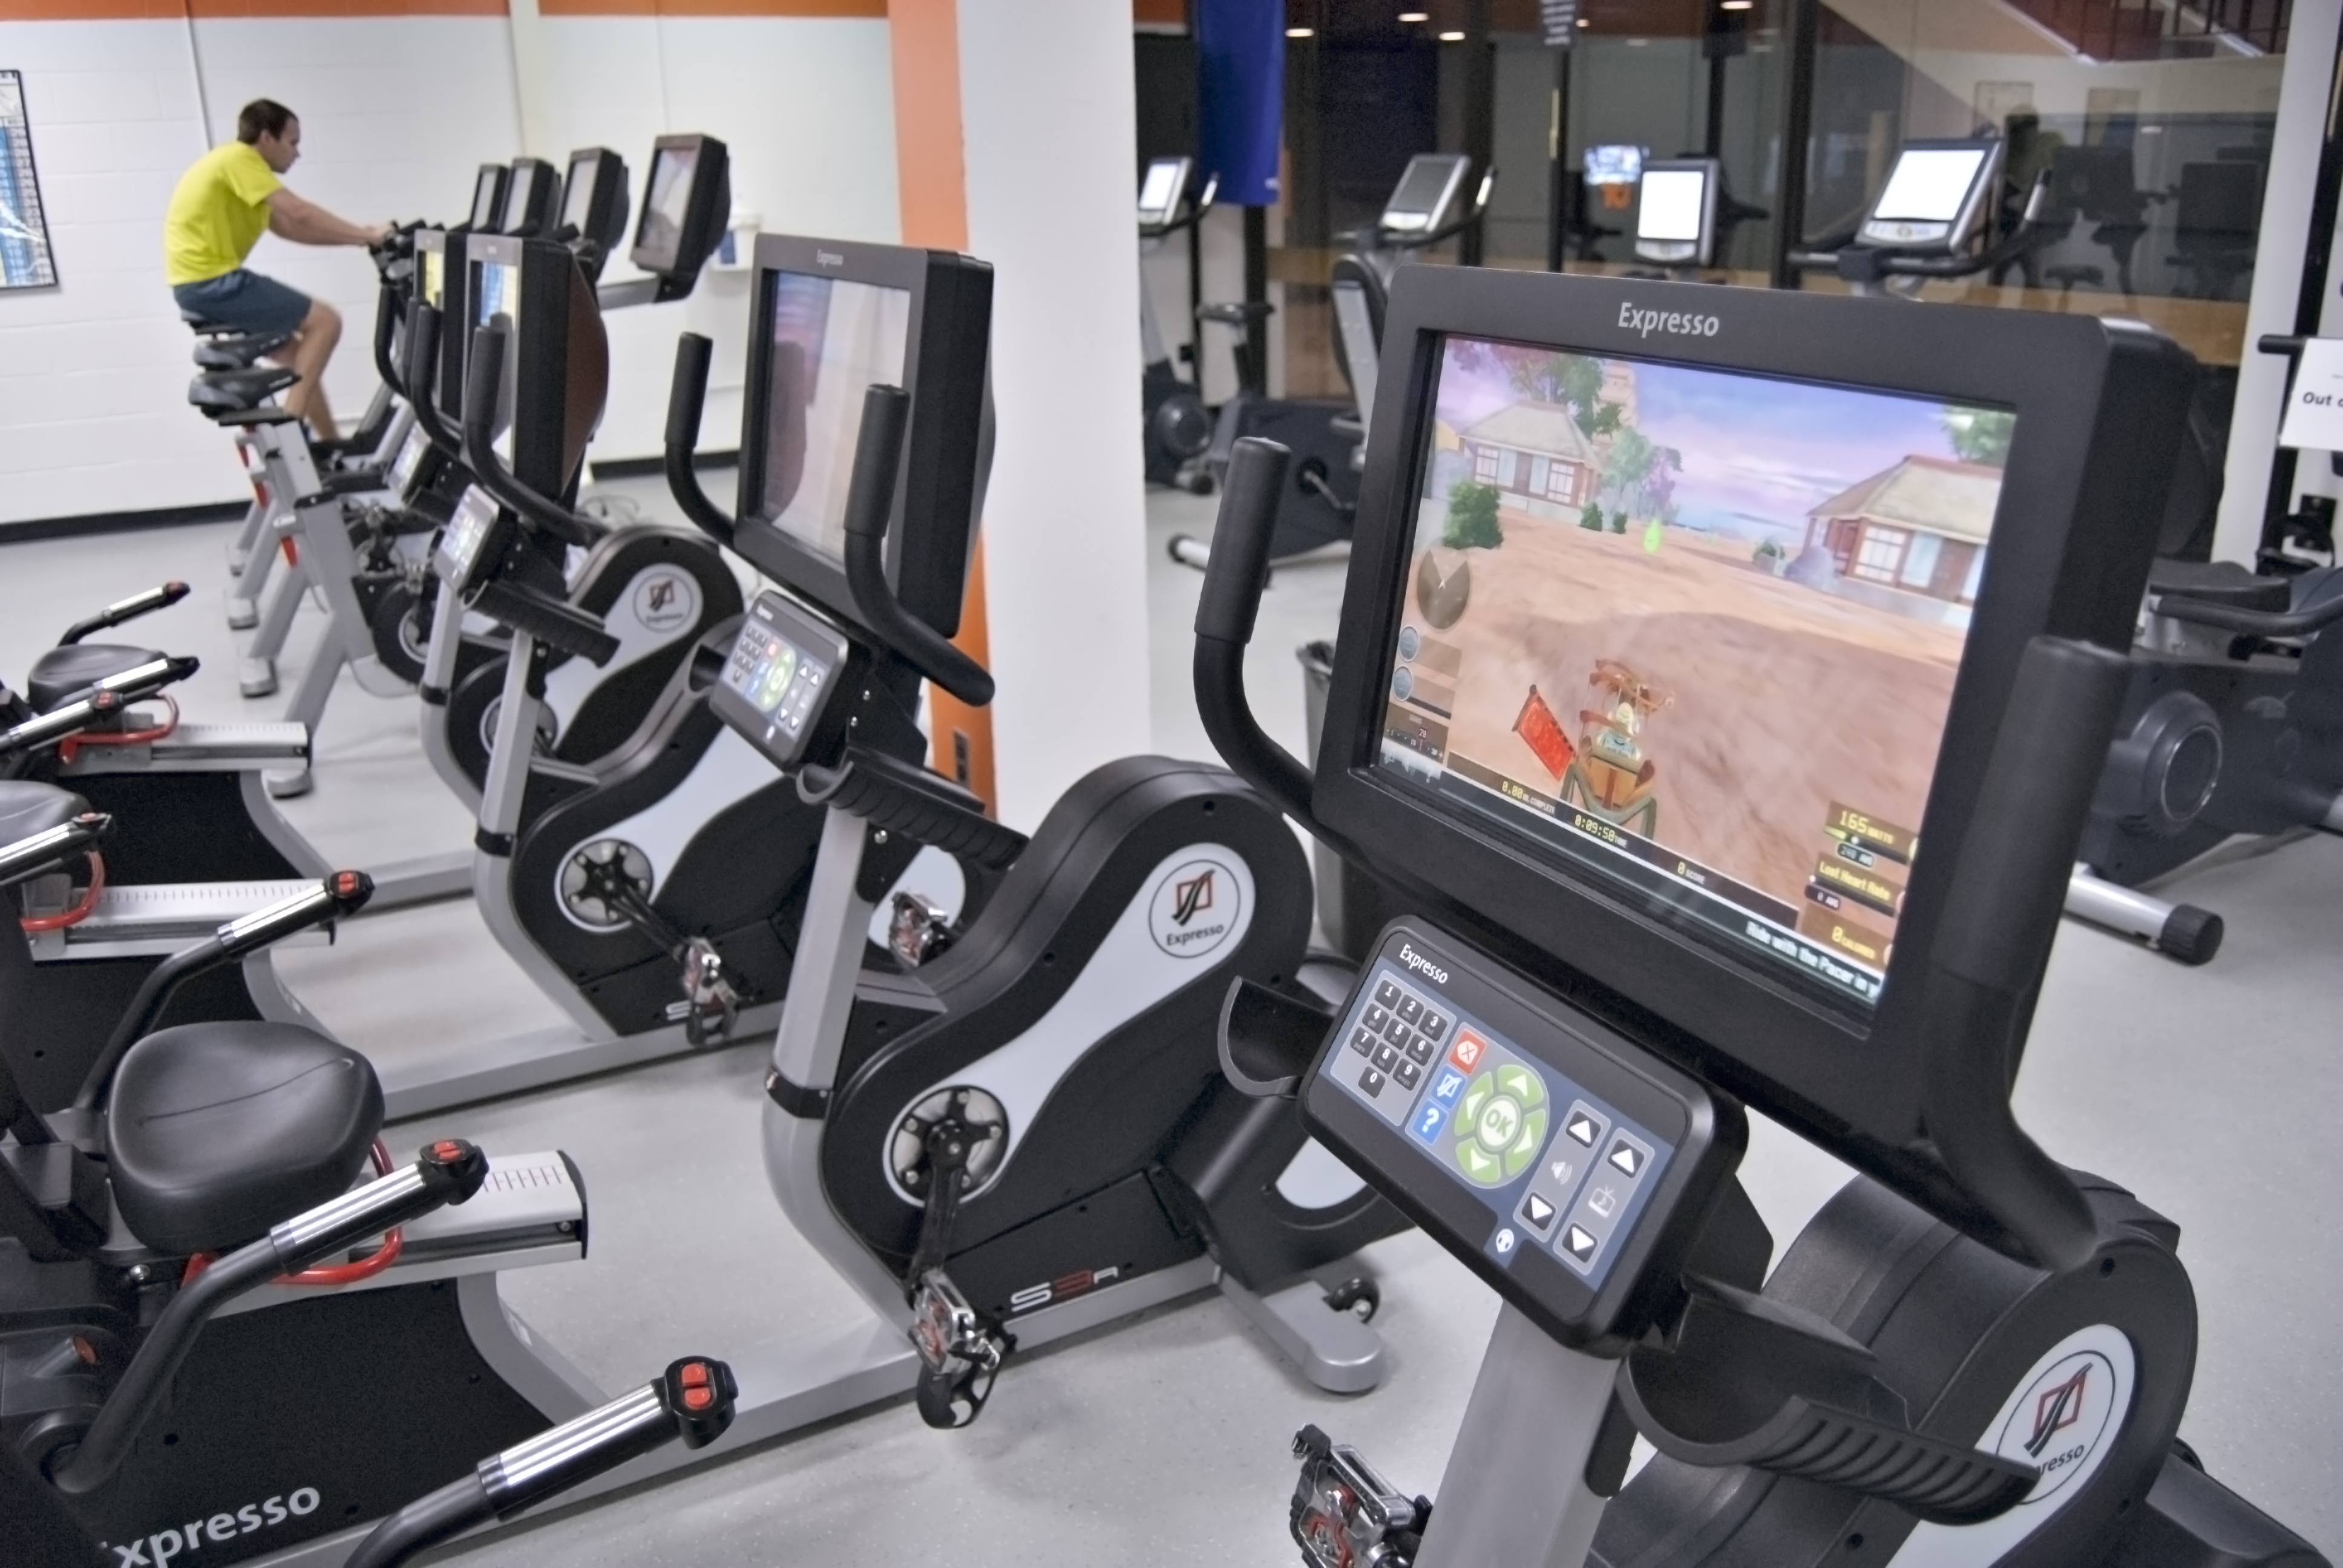 treadmills at fitness center